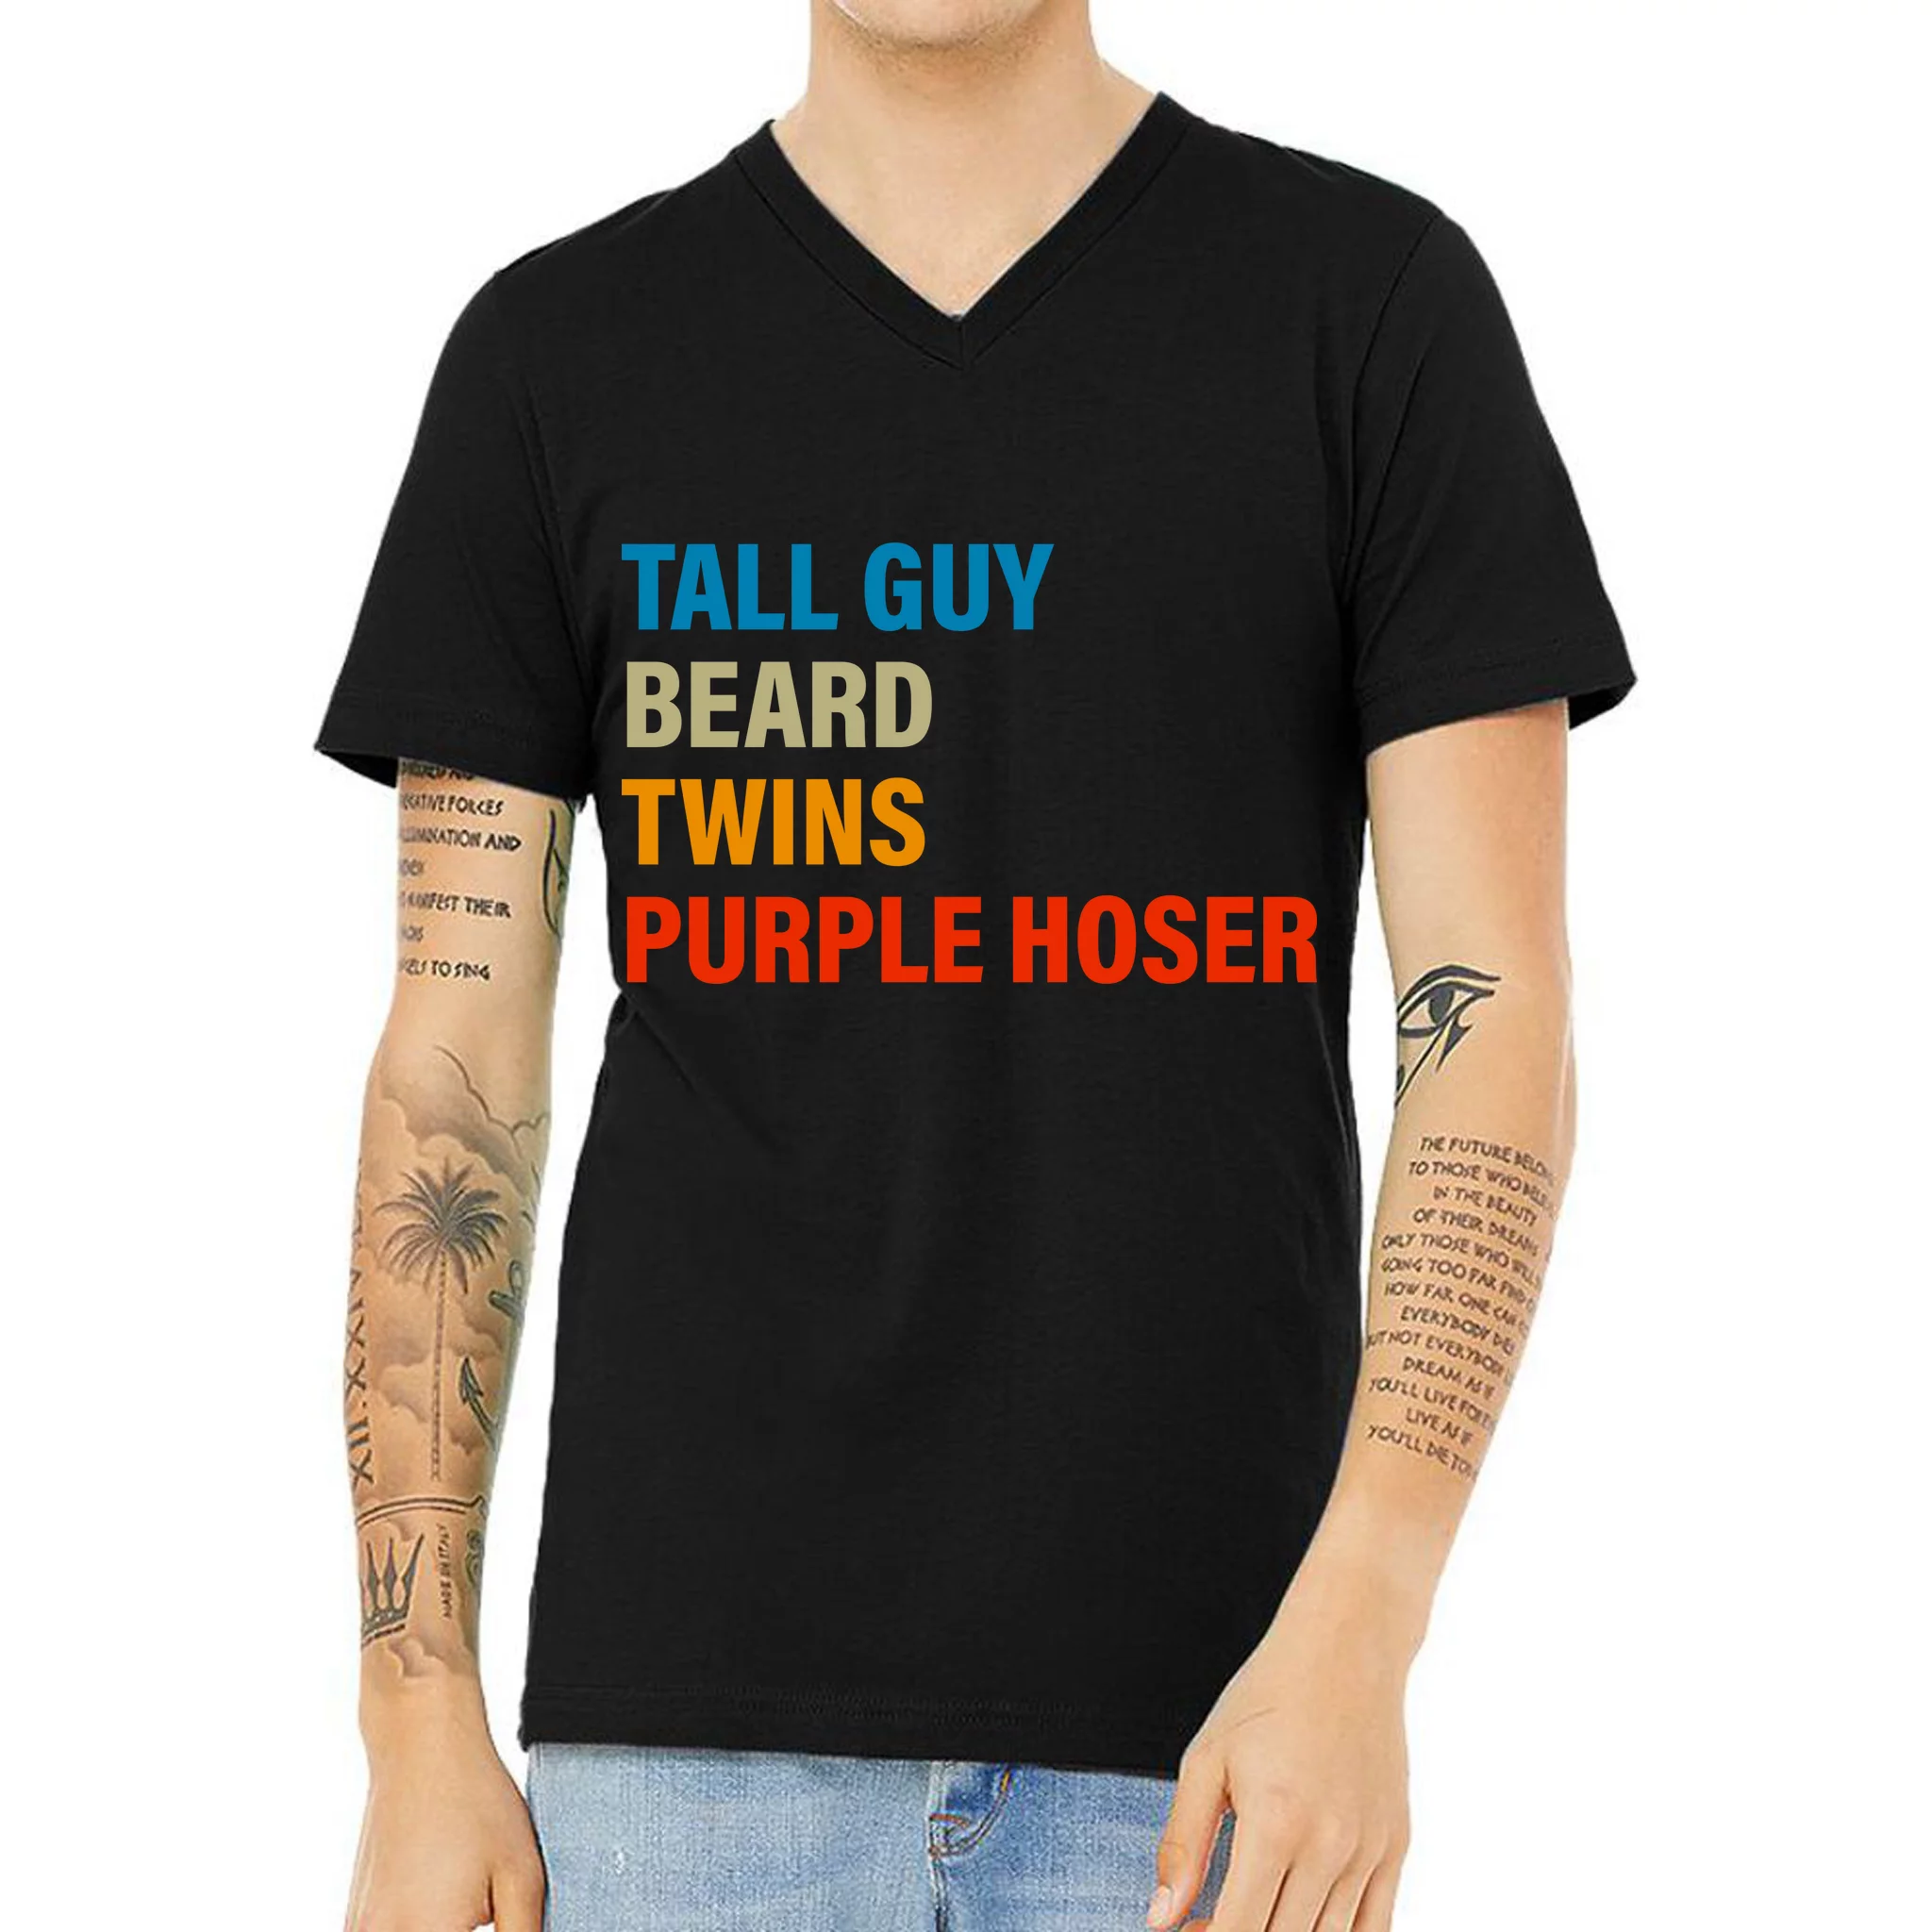 purple shirt guy meme